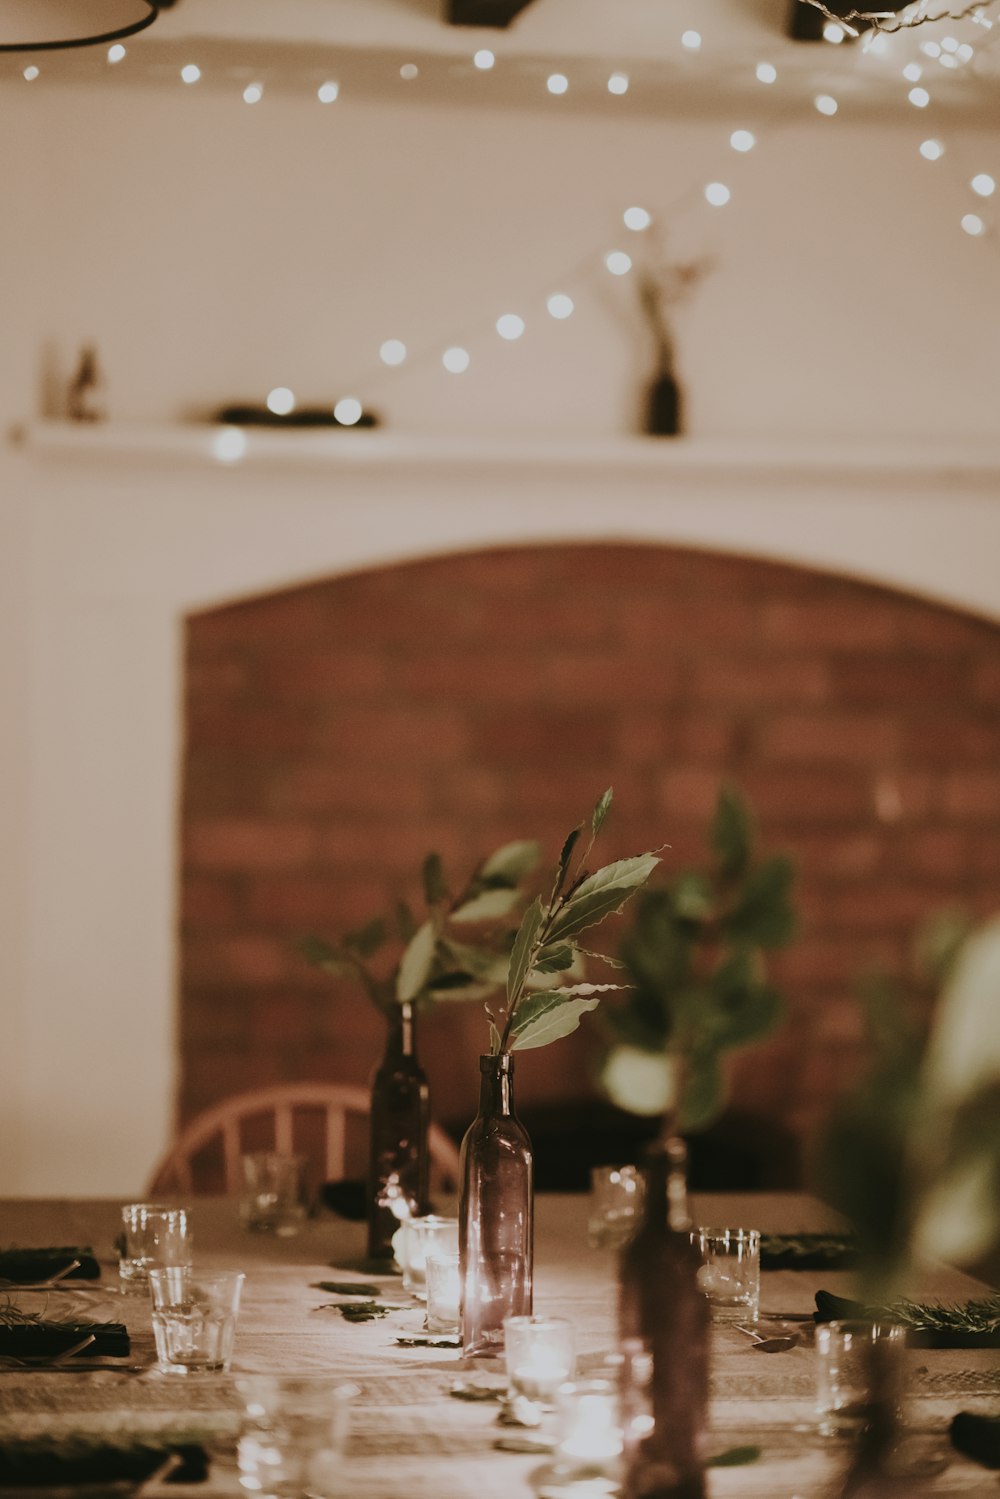 fotografia de foco seletivo de plantas em garrafas de vidro sobre a mesa